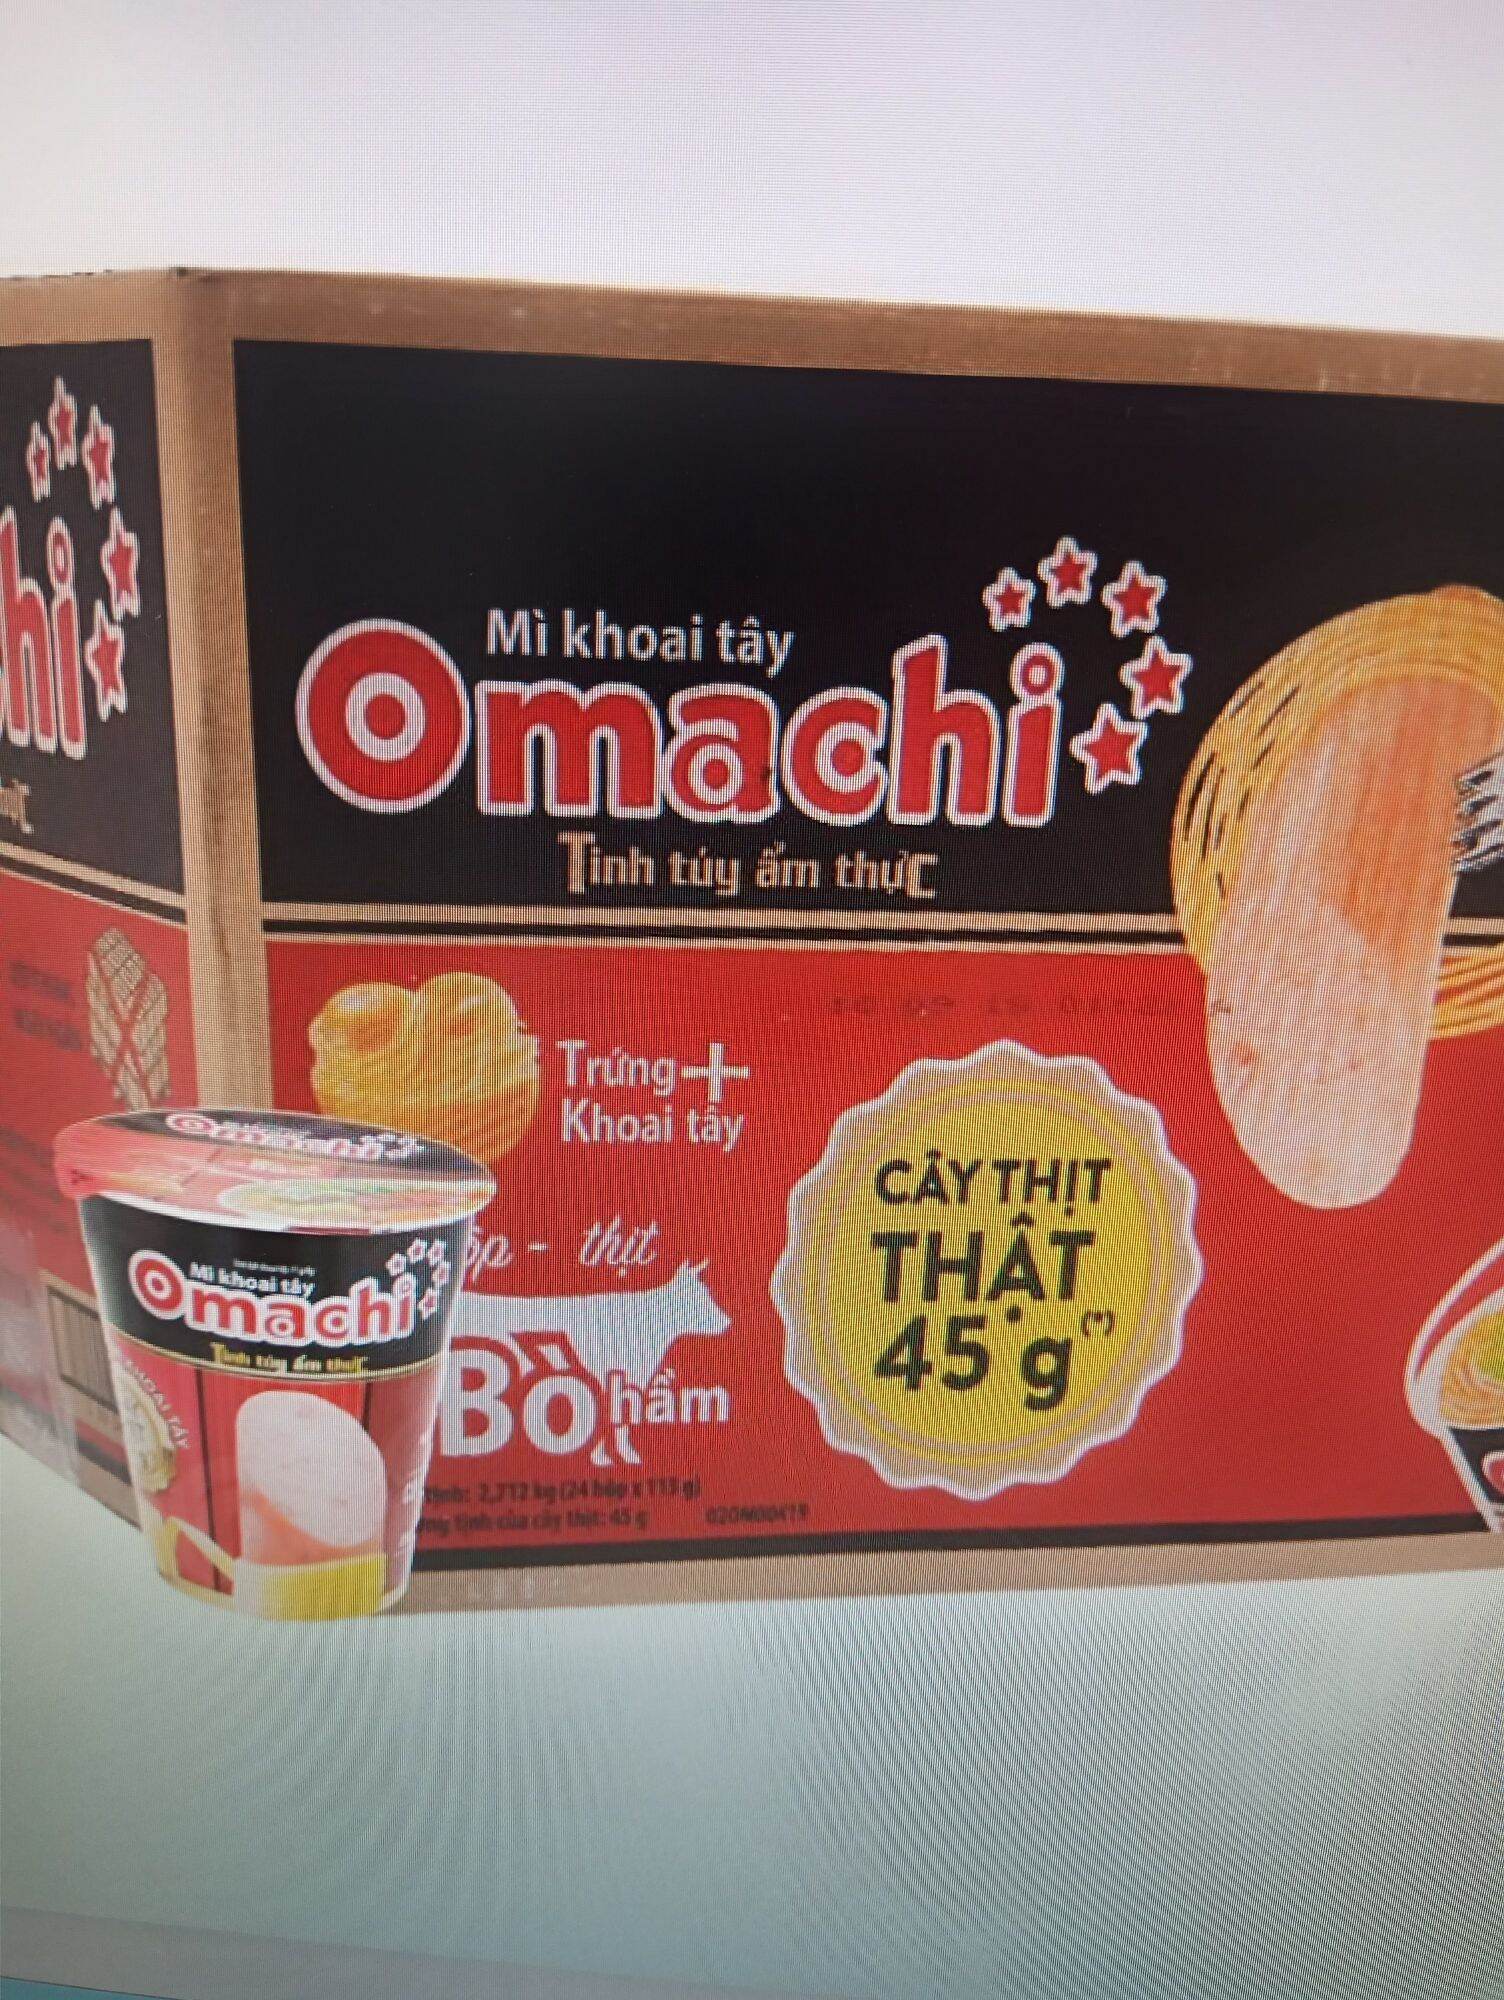 Mì omachi sốt bò hầm sườn hầm ngũ quả tôm chua cay  có cây thịt 45g bên - ảnh sản phẩm 3